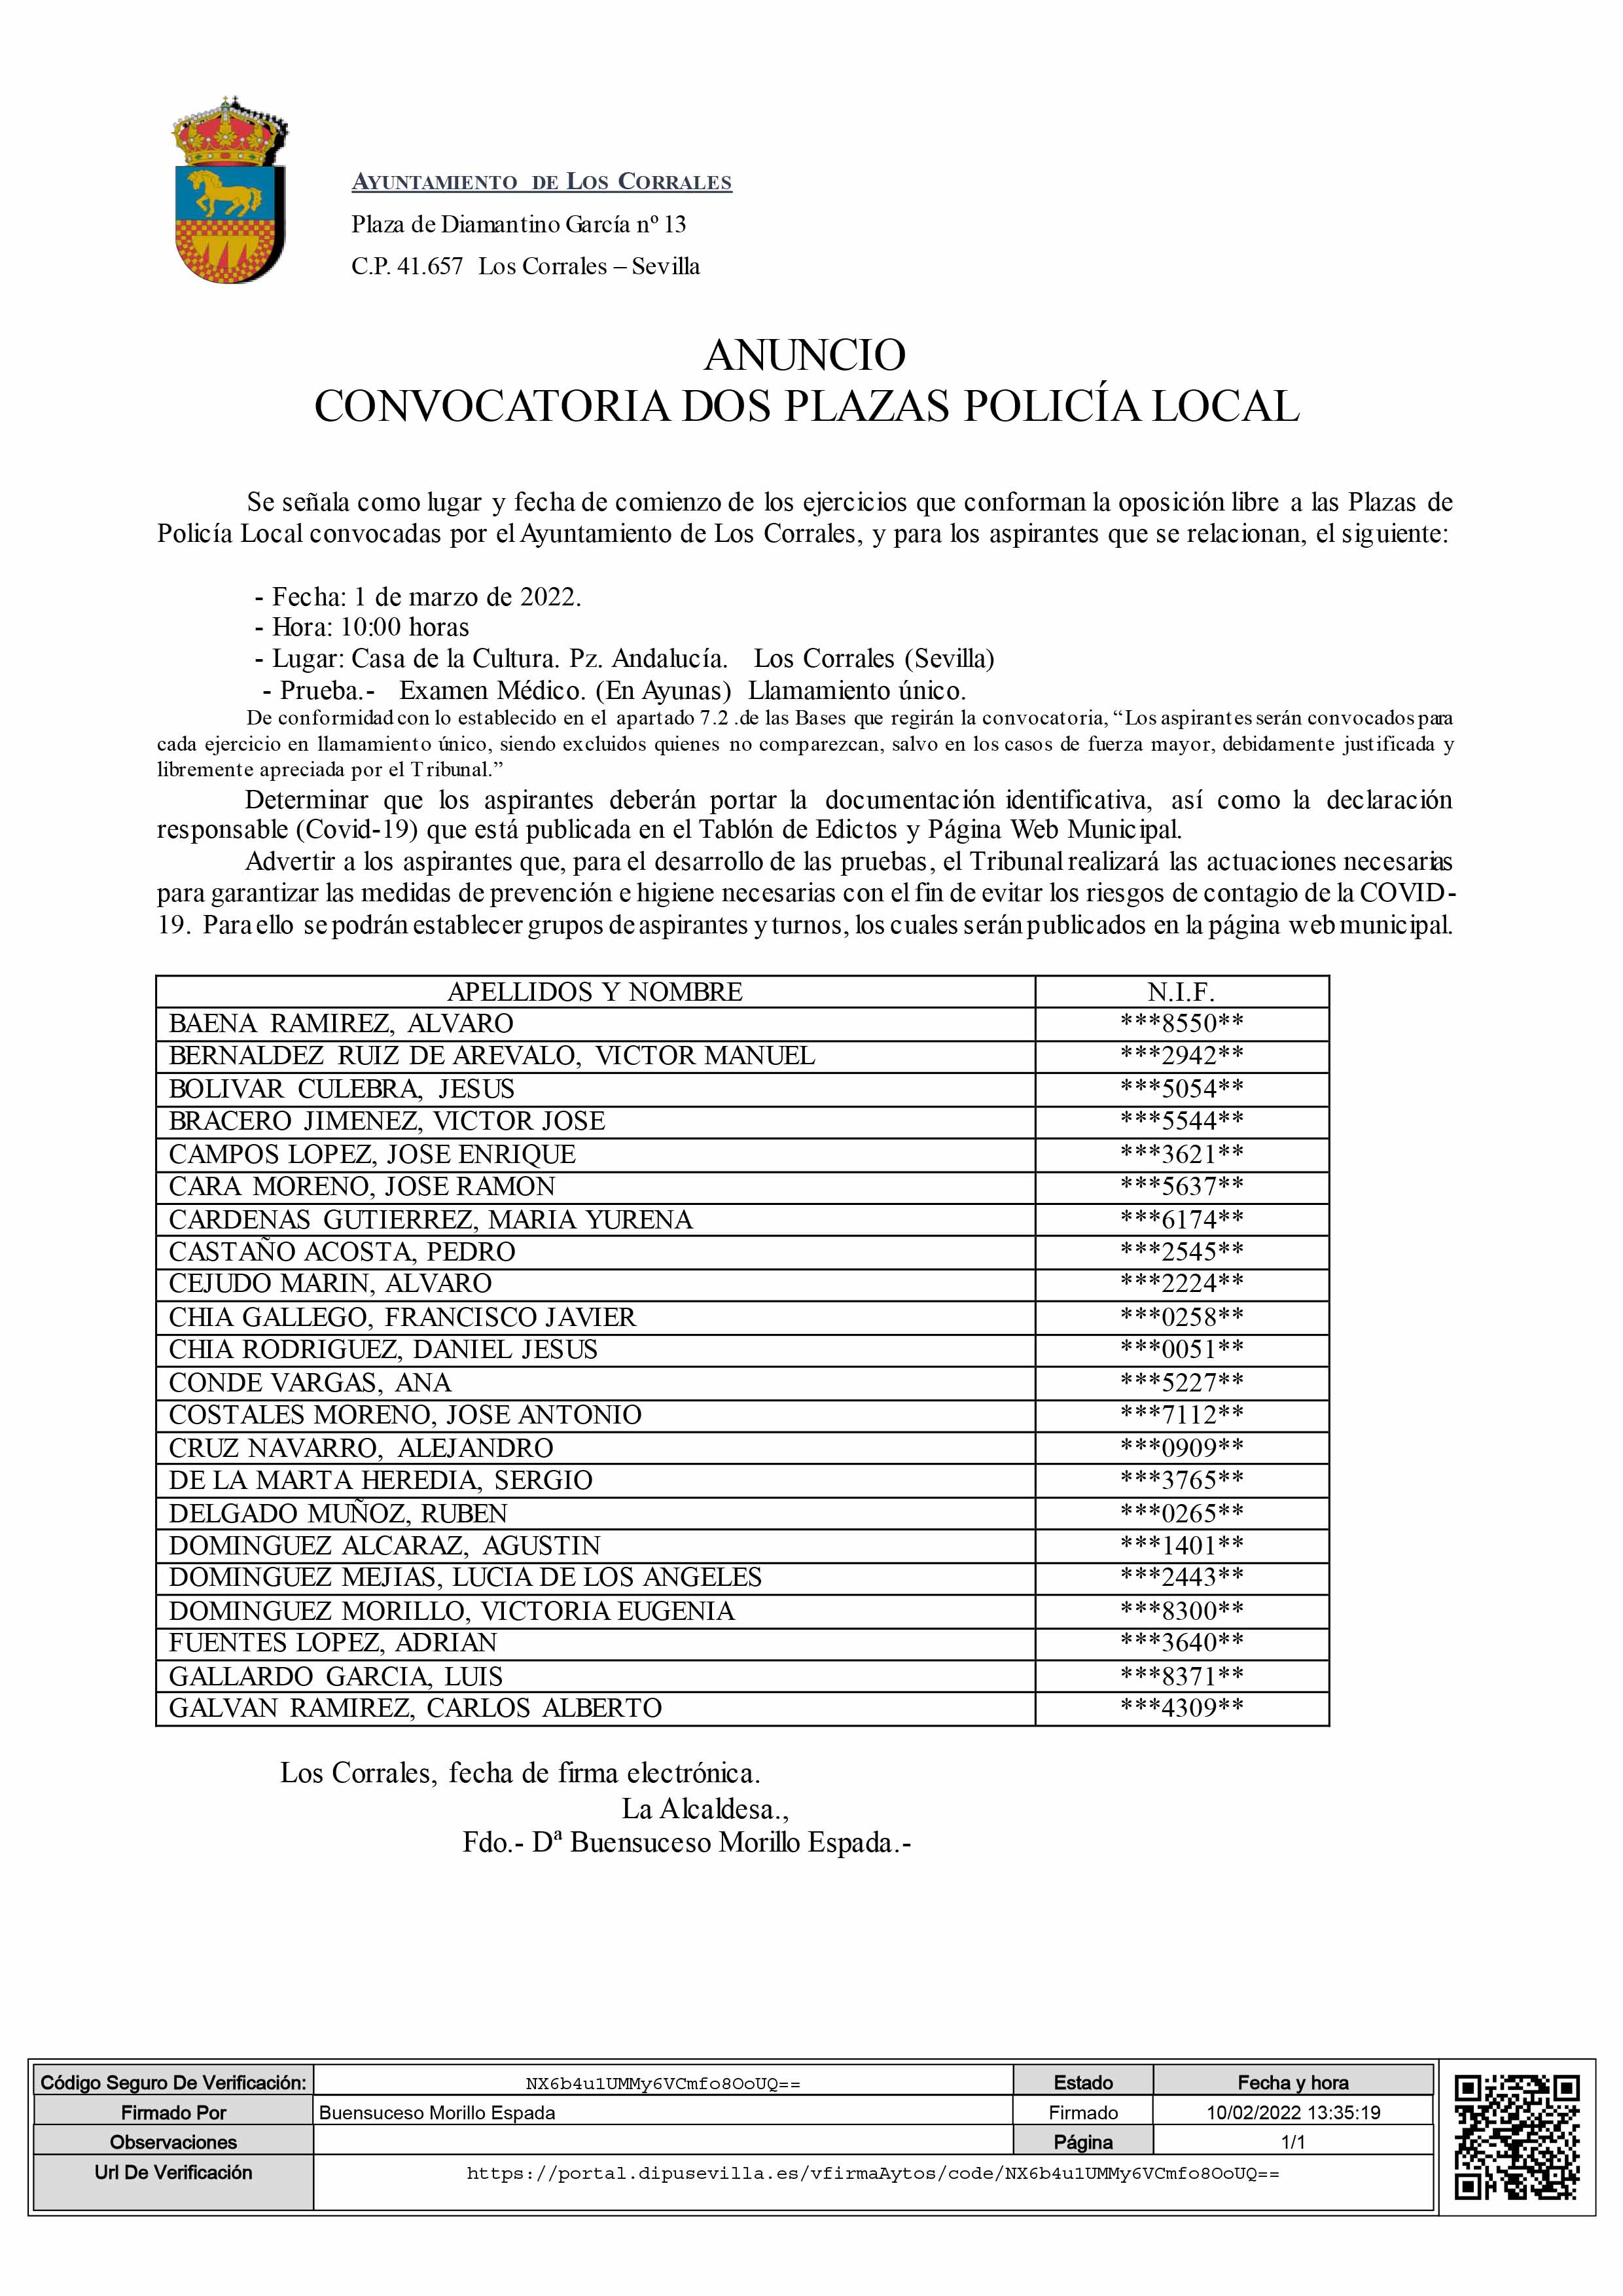 ANUNCIO CONVOCATORIA DOS PLAZAS POLICÍA LOCAL